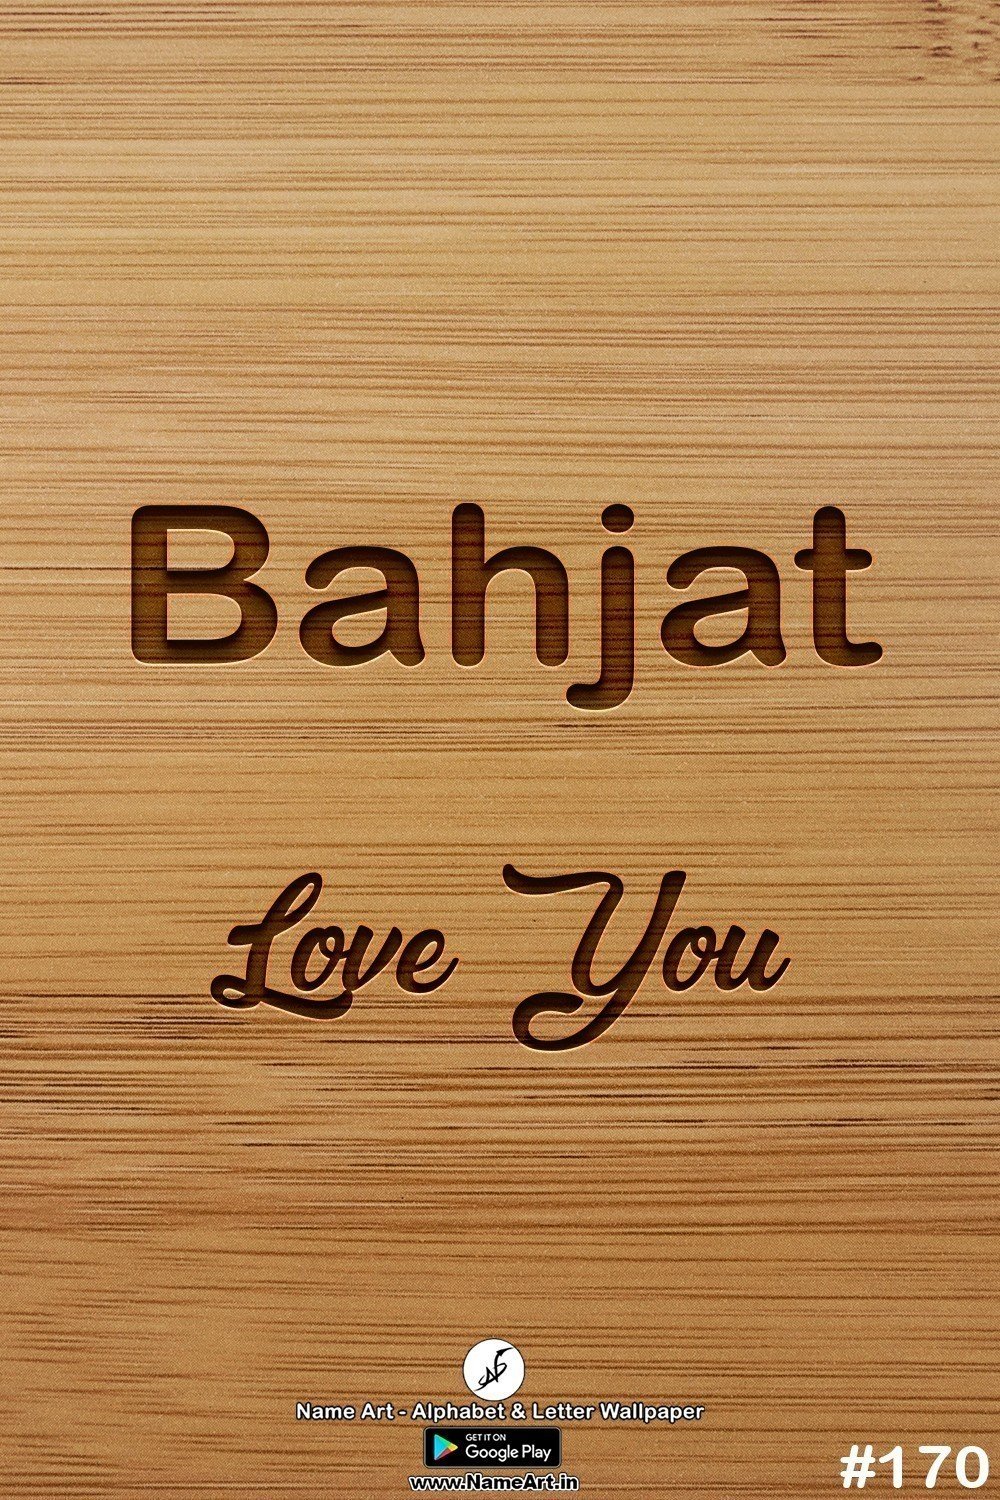 Bahjat | Whatsapp Status Bahjat | Happy Birthday Bahjat !! | New Whatsapp Status Bahjat Images |